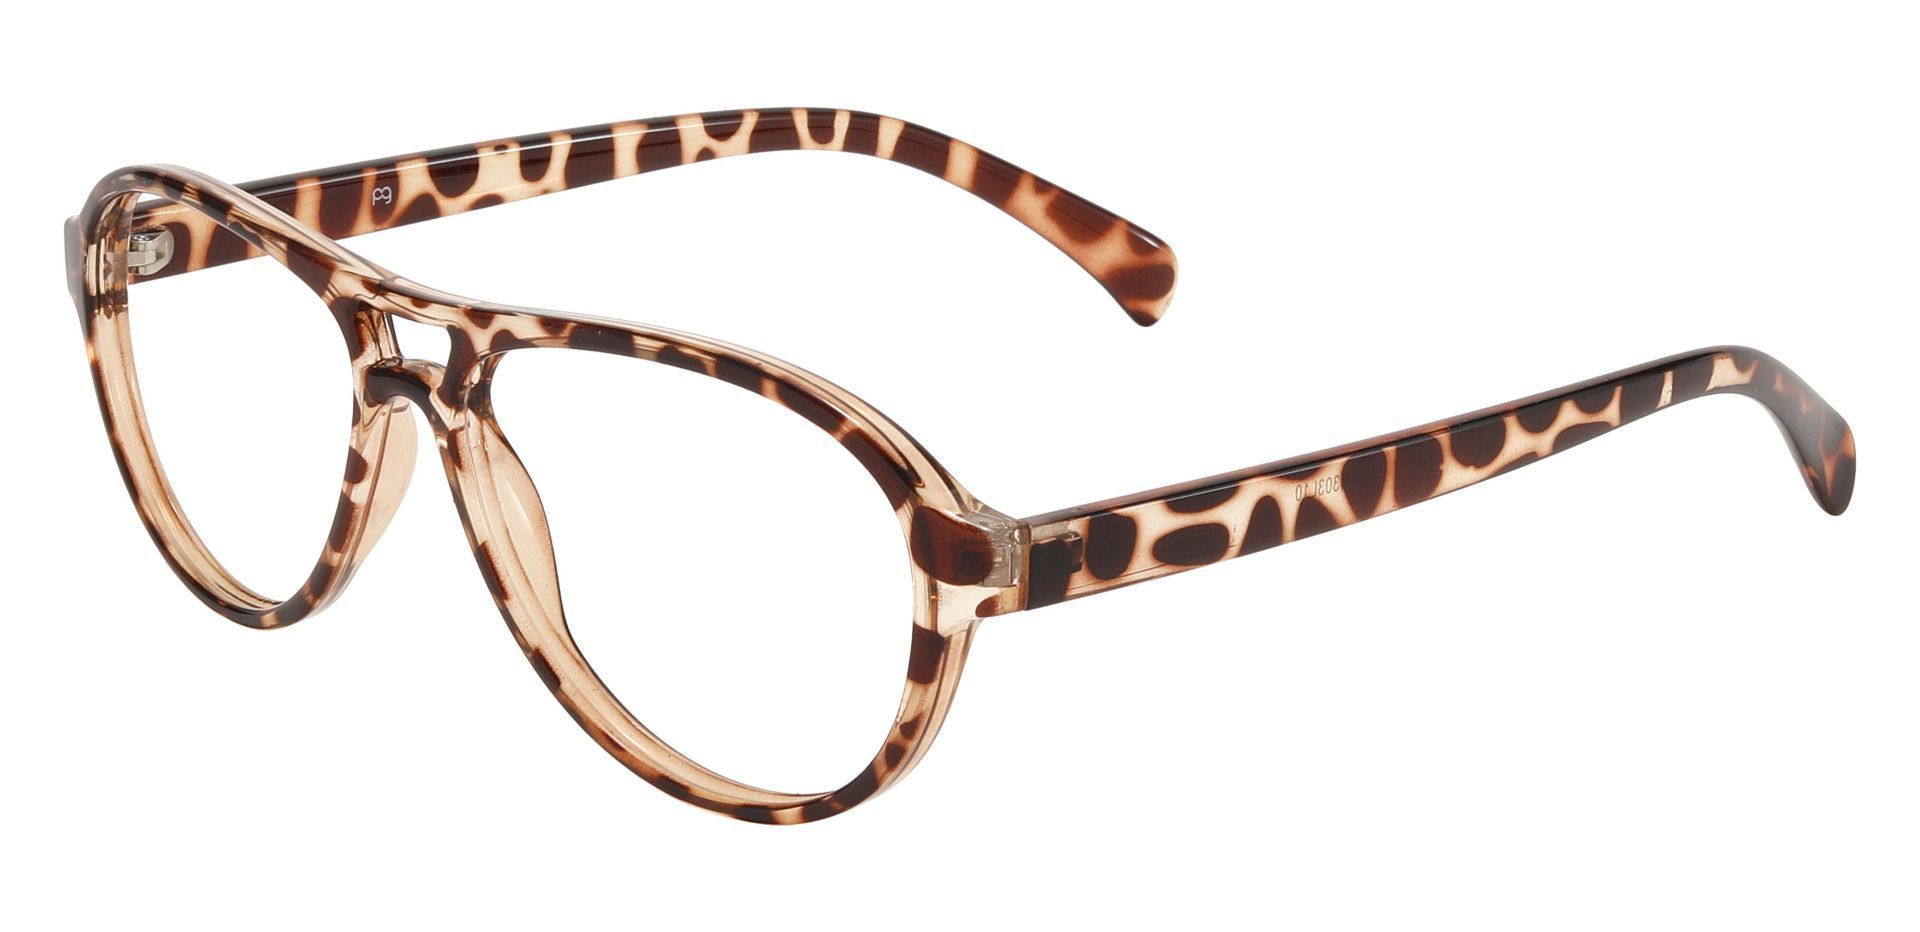 Sosa Aviator Prescription Glasses - Leopard